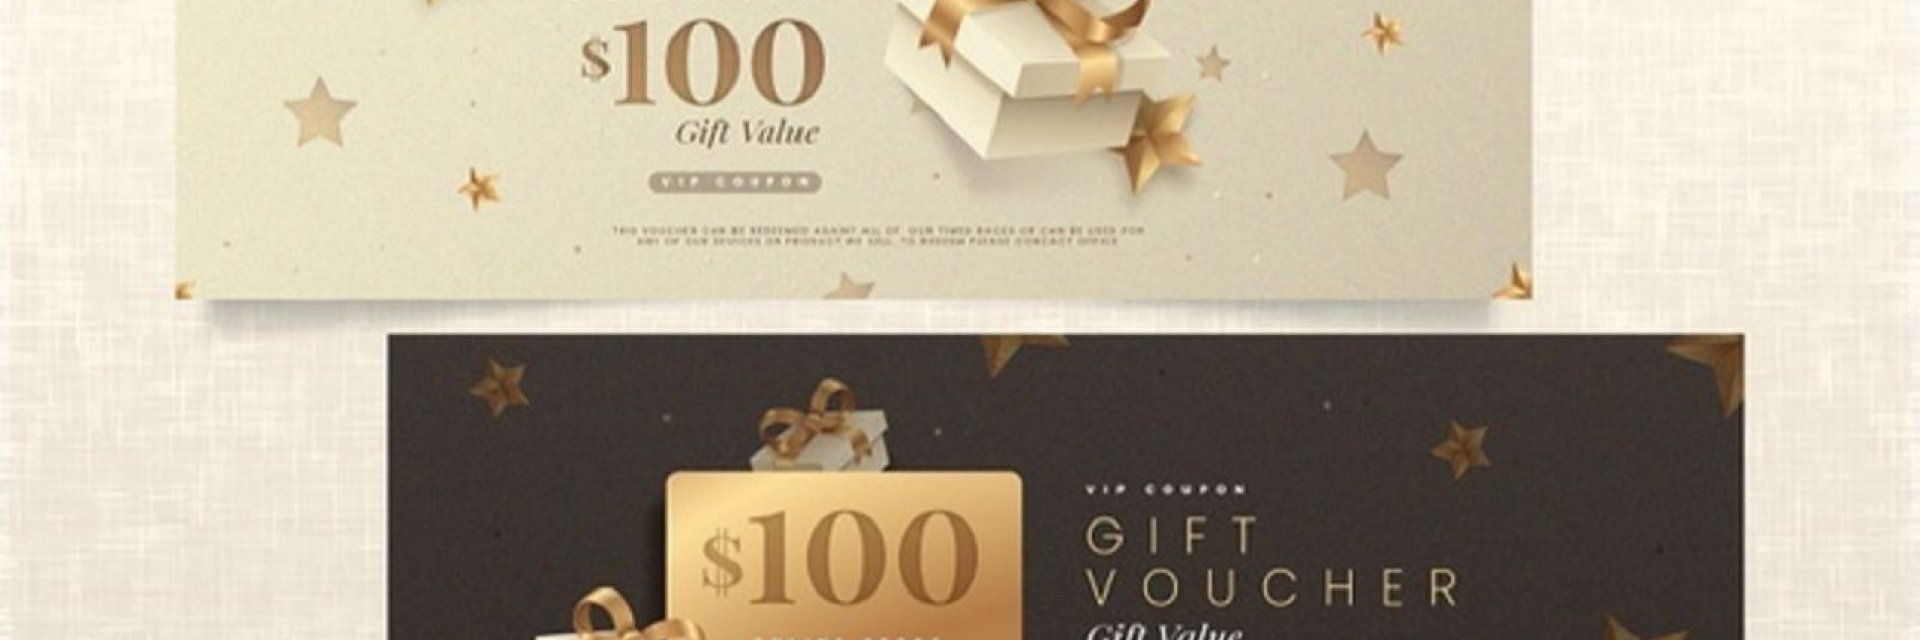 golden-gift-voucher-template-pack-52683-53664-2